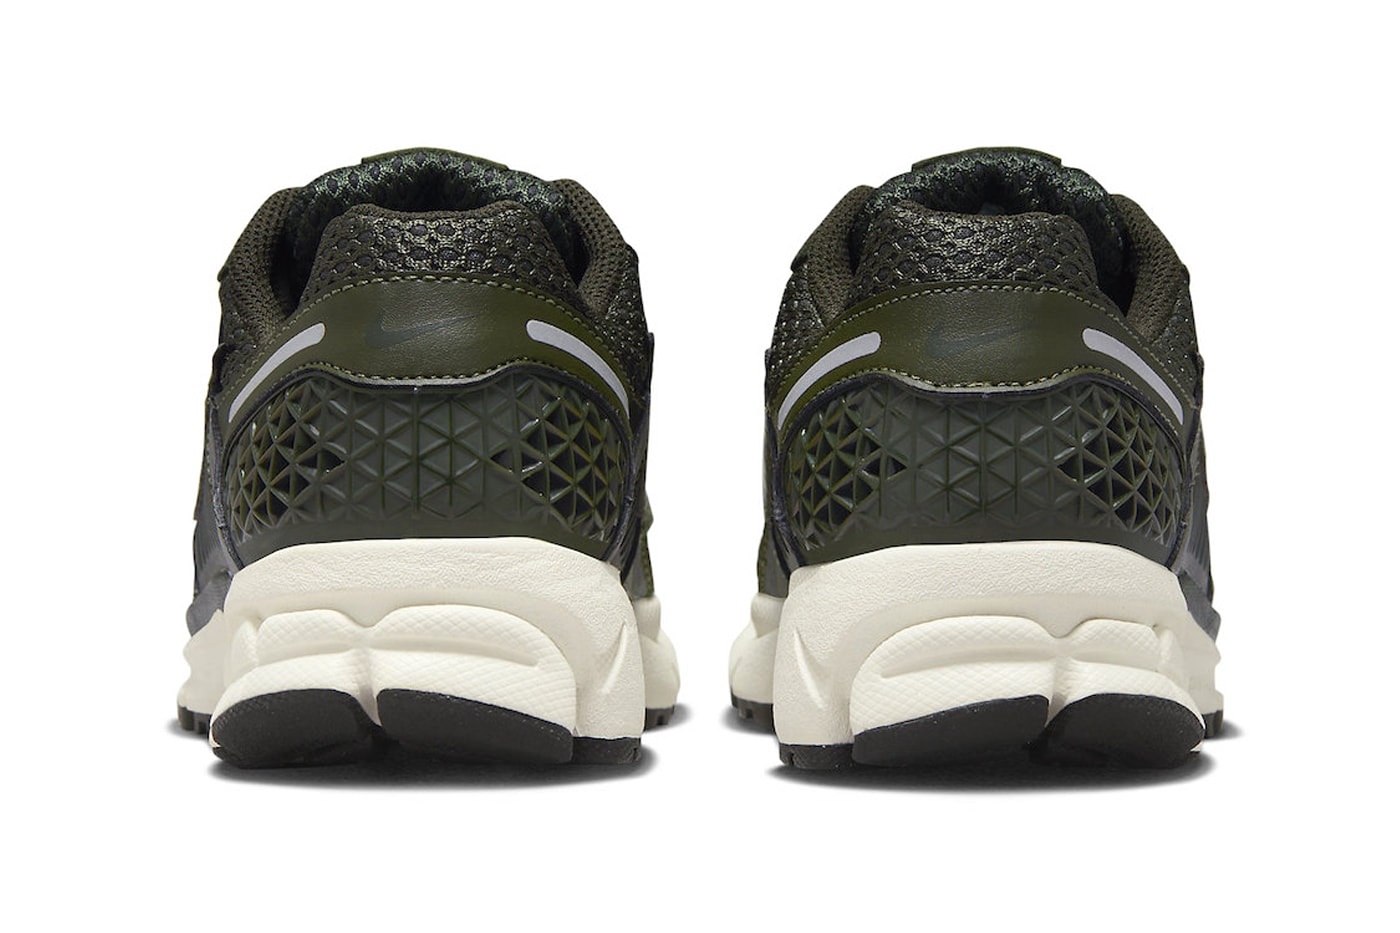 Nike Zoom Vomero 5 Releases in "Cargo Khaki" Cargo Khaki/Sequoia-Sail-Metallic Silver FQ8898-325